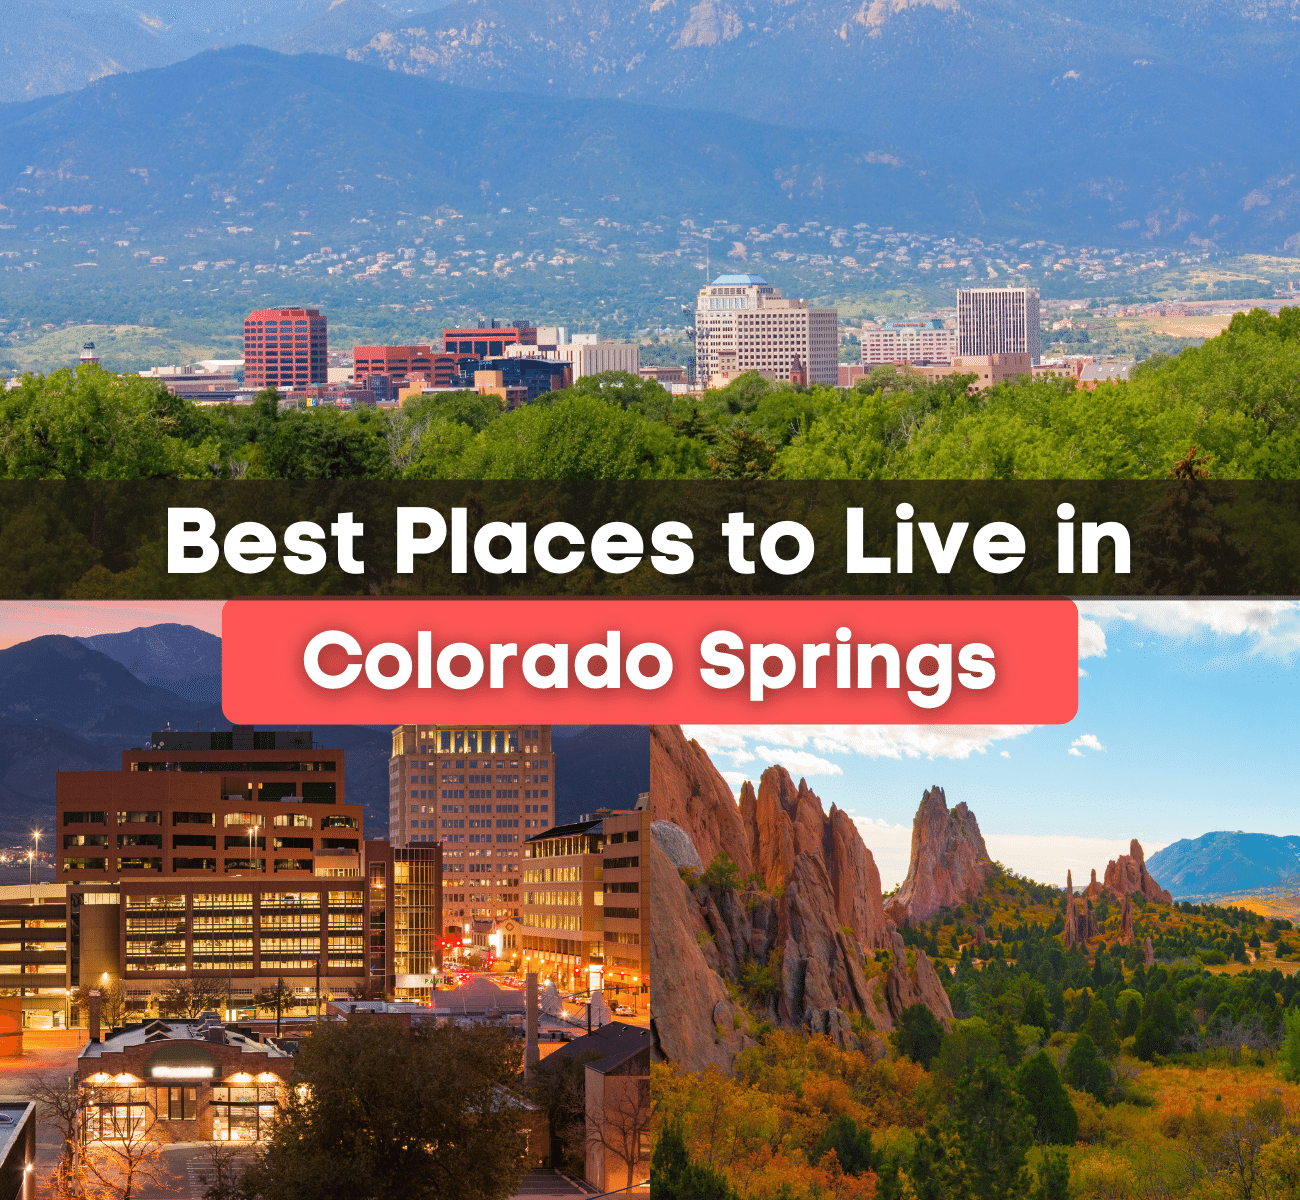 Colorado Springs Best Places to Live - Best Neighborhoods in Colorado Springs